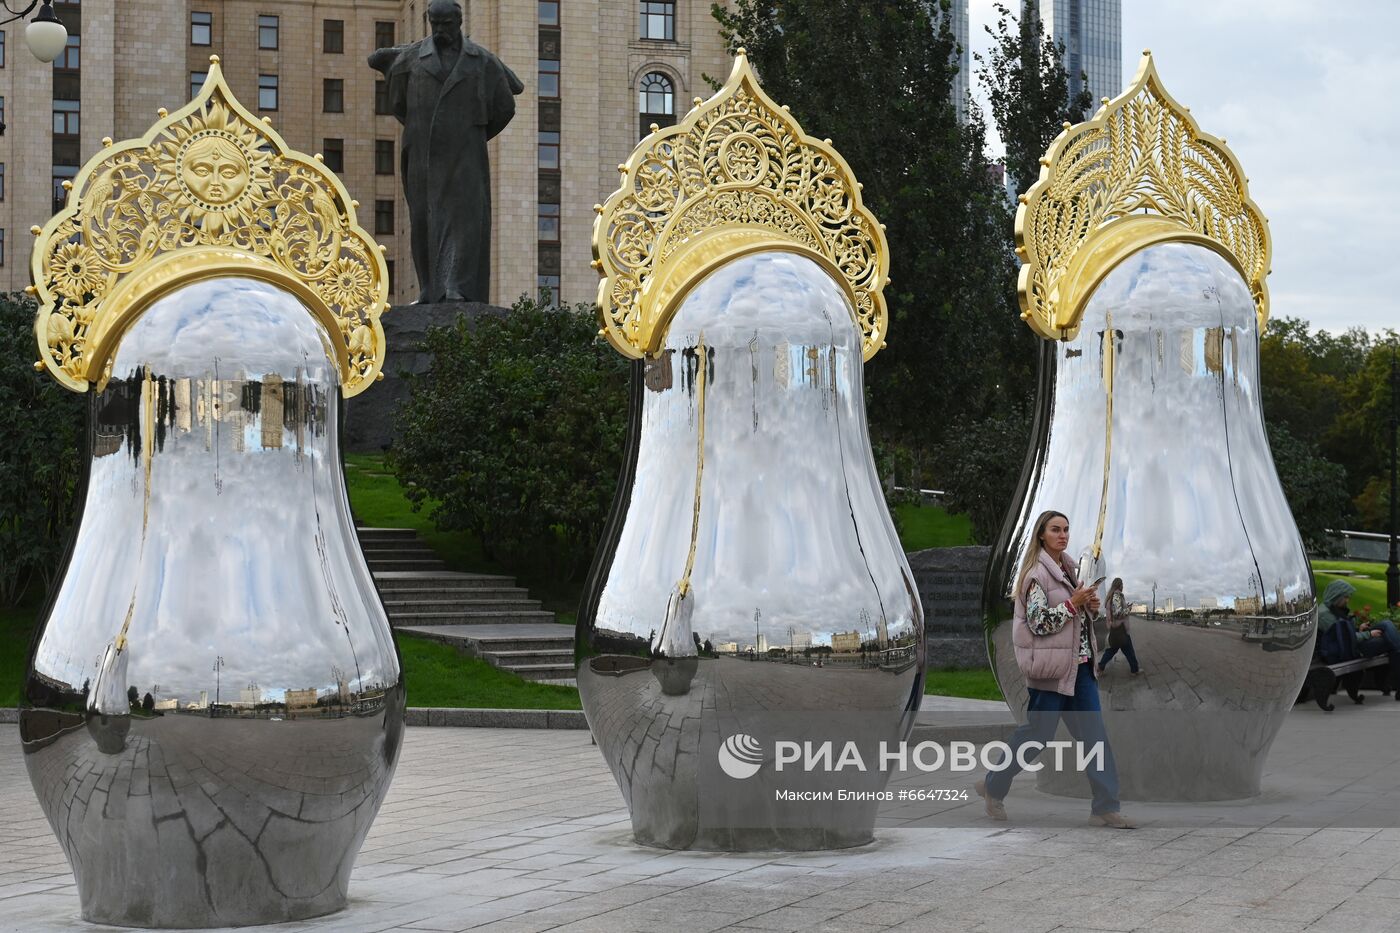 Новый арт-объект появился в Москве